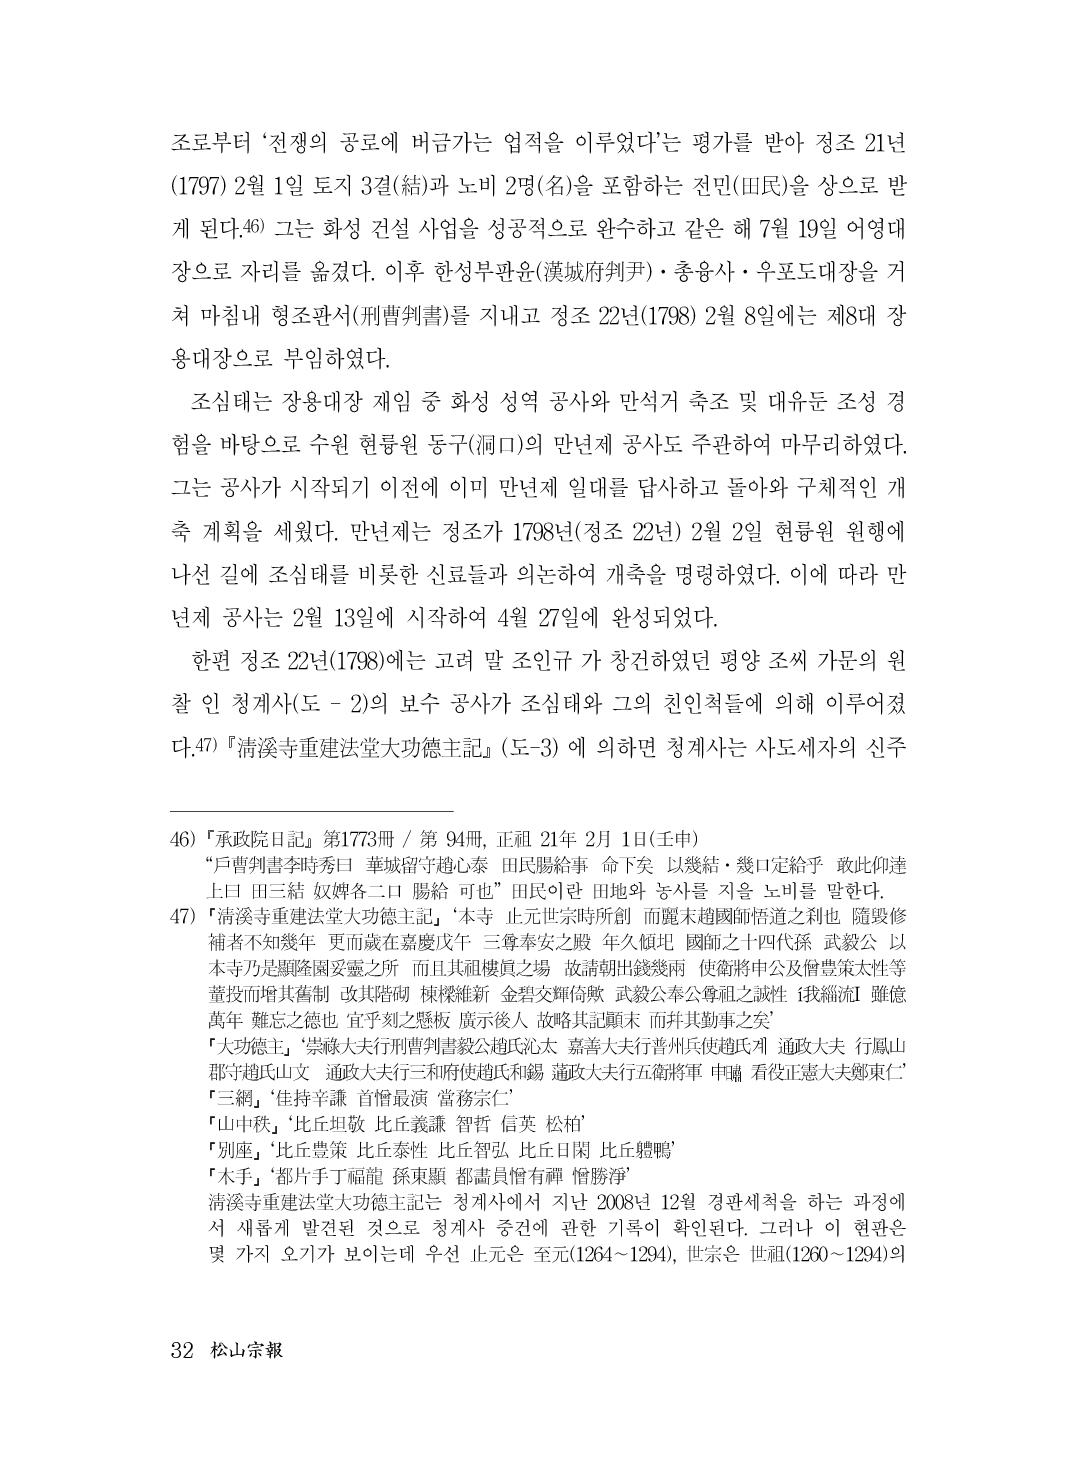 (전체) 송산종보(27호)(최종)_33.jpg